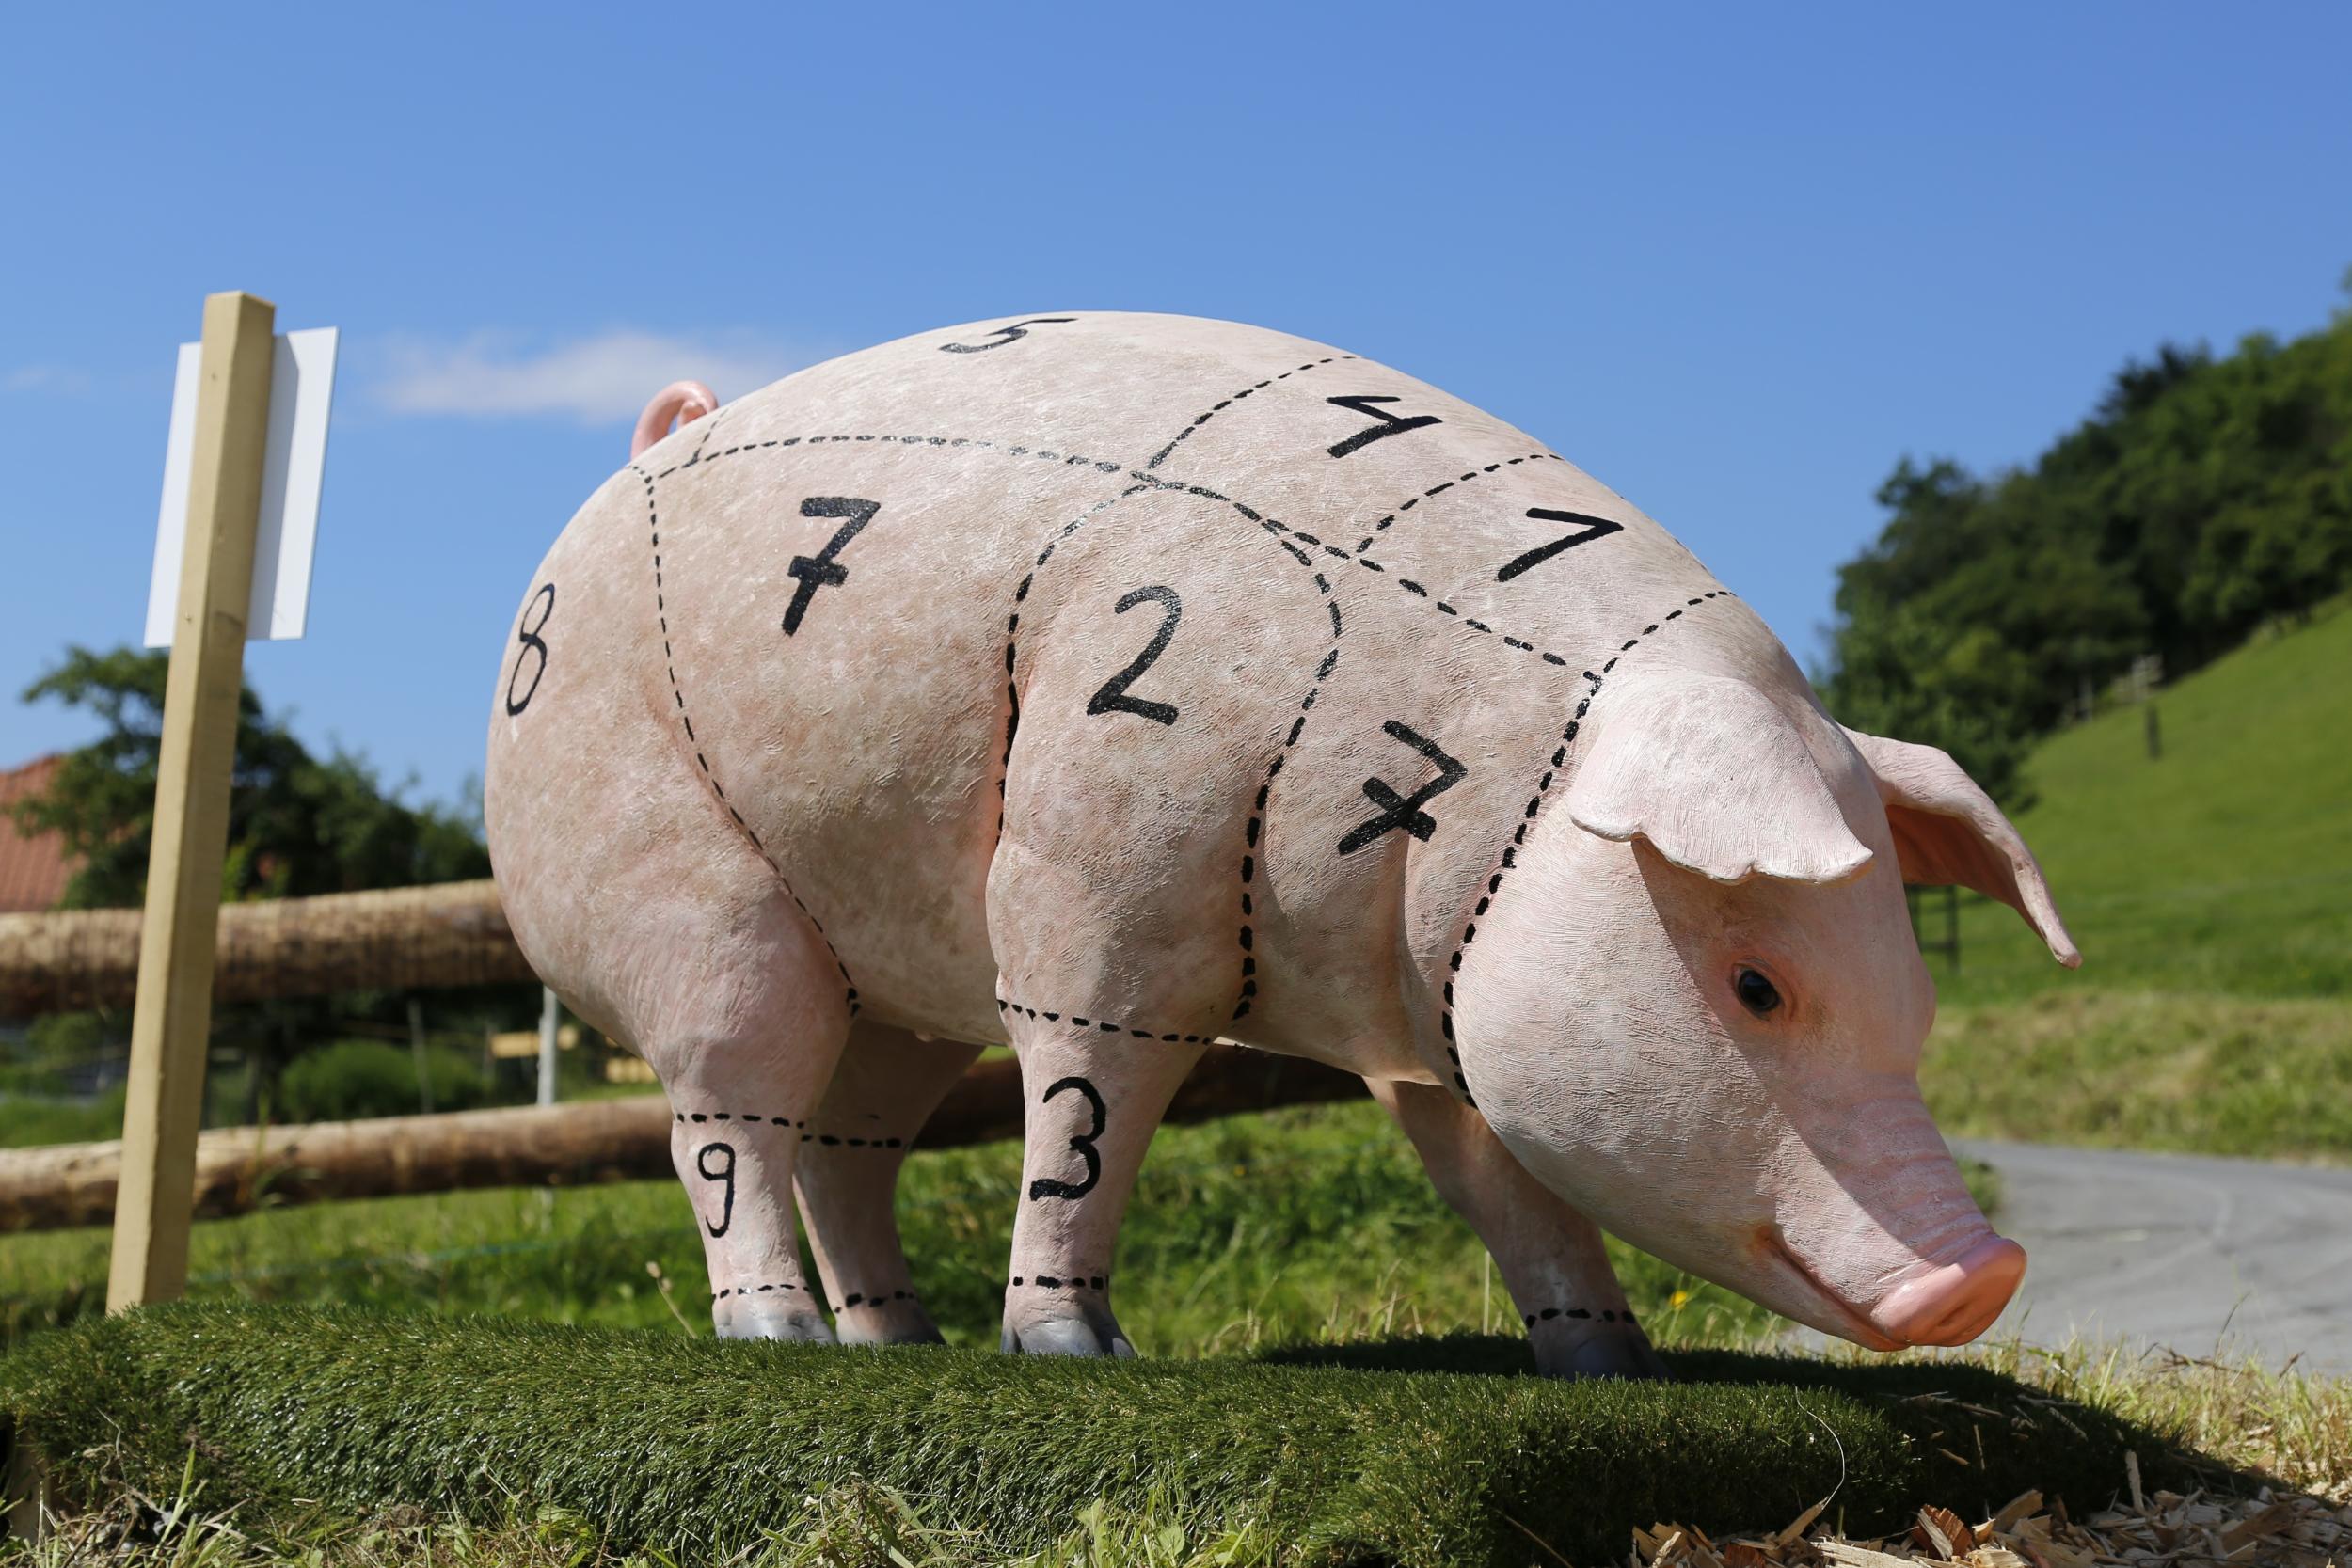 Schwein haben<br>Schöpfungsbewahrung im Bereich der Tierhaltung, Fleischproduktion und -vermarktung